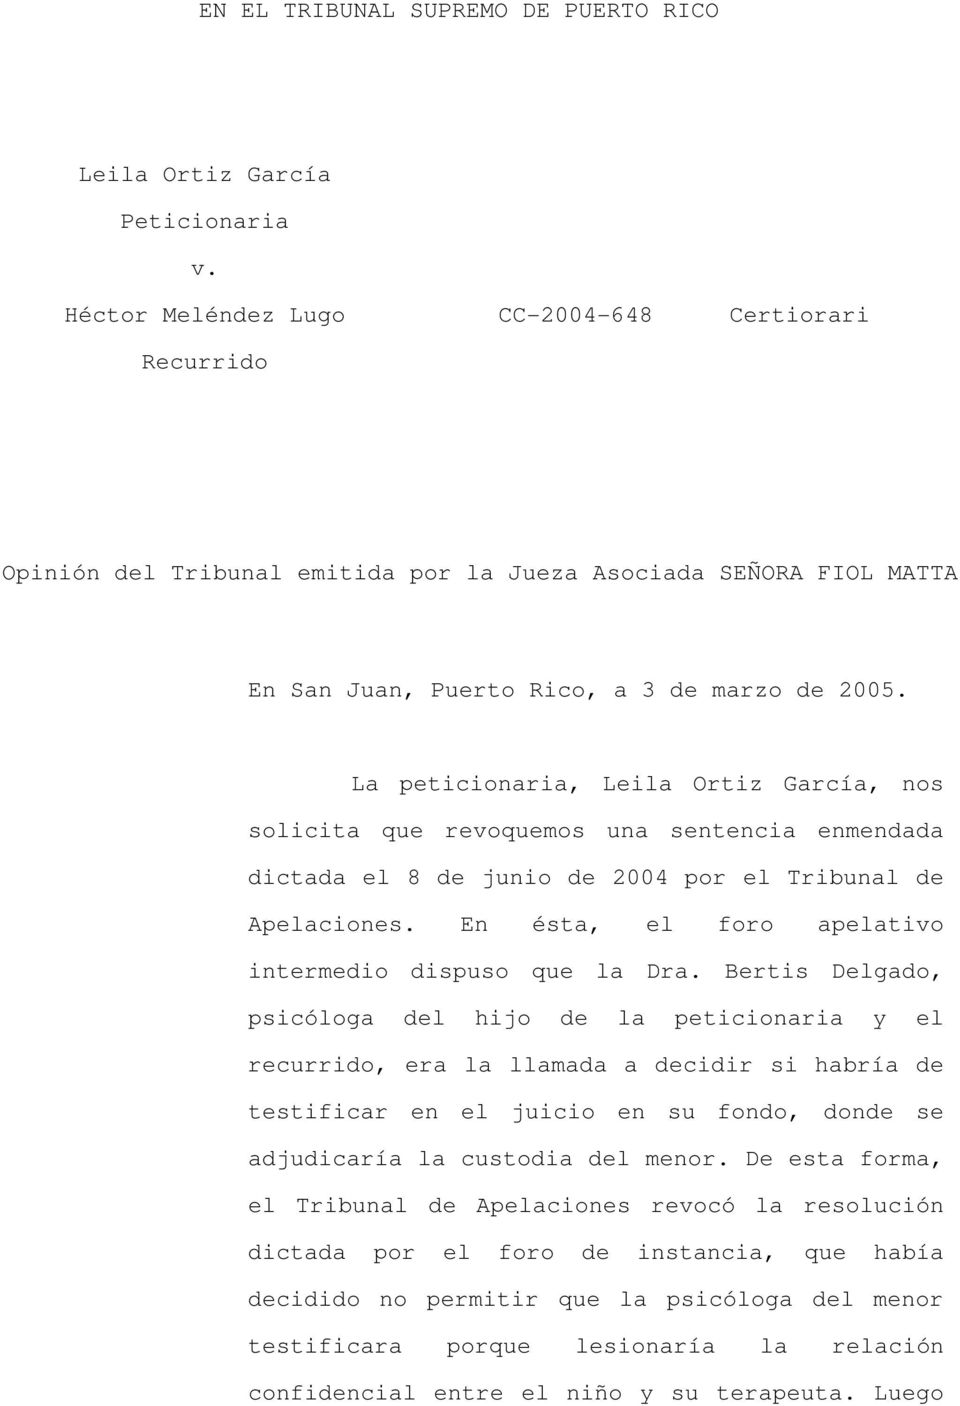 La peticionaria, Leila Ortiz García, nos solicita que revoquemos una sentencia enmendada dictada el 8 de junio de 2004 por el Tribunal de Apelaciones.